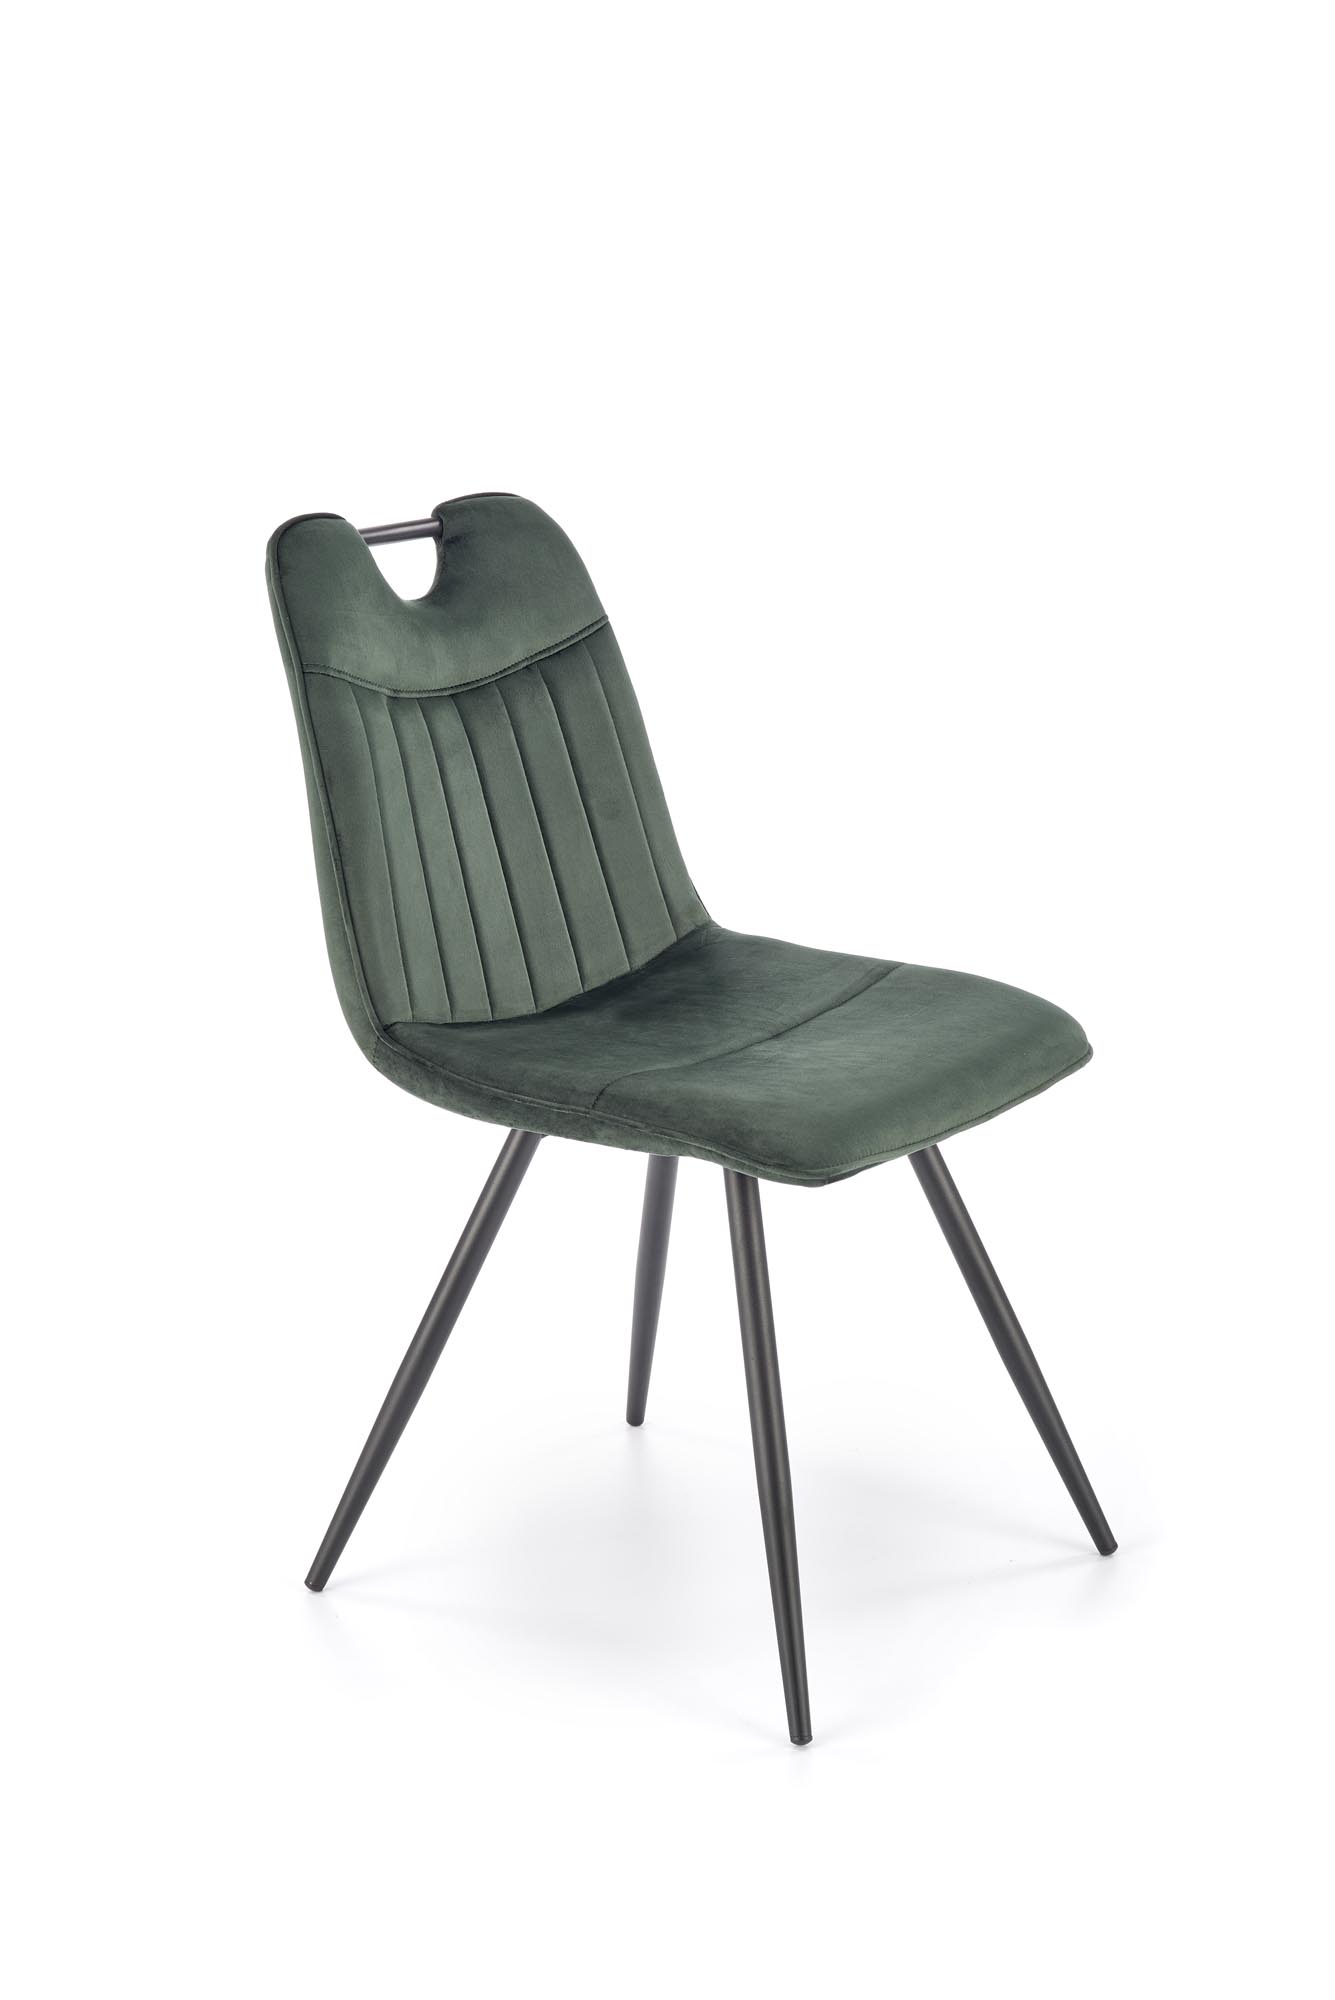 K521 Židle tmavý Zelený Židle čalouněné k521 - tmavý Zelený